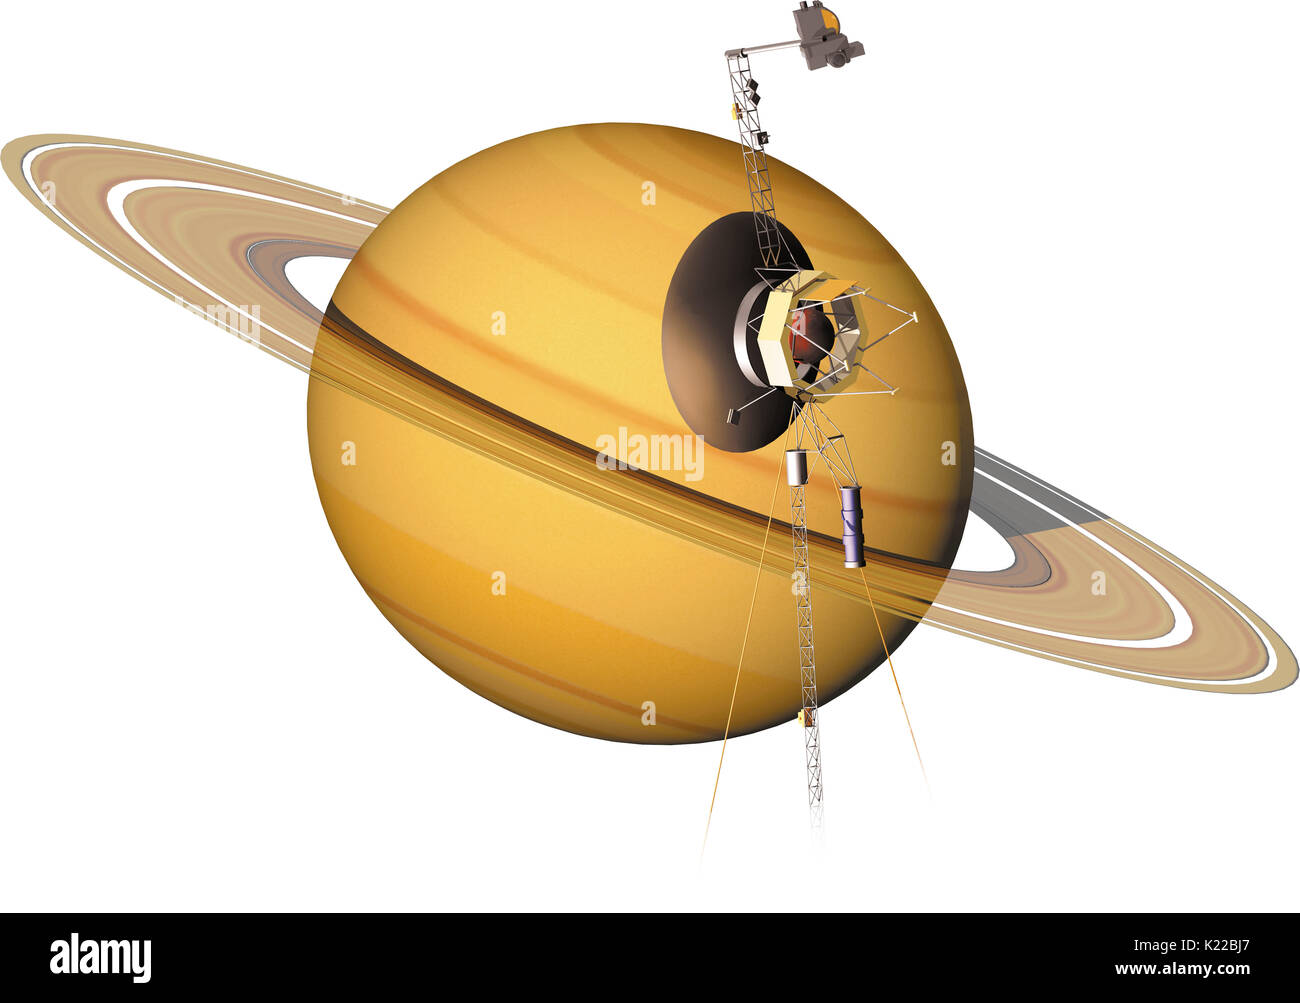 Voyager 1 und 2 umgewandelt, unser Wissen über riesigen Planeten; über 30 Jahre nachdem sie wurden im Jahre 1977 gestartet wurde, fahren Sie fort, die heliosheath zu erkunden, die Region in äußerster Randlage des Sonnensystems. Stockfoto